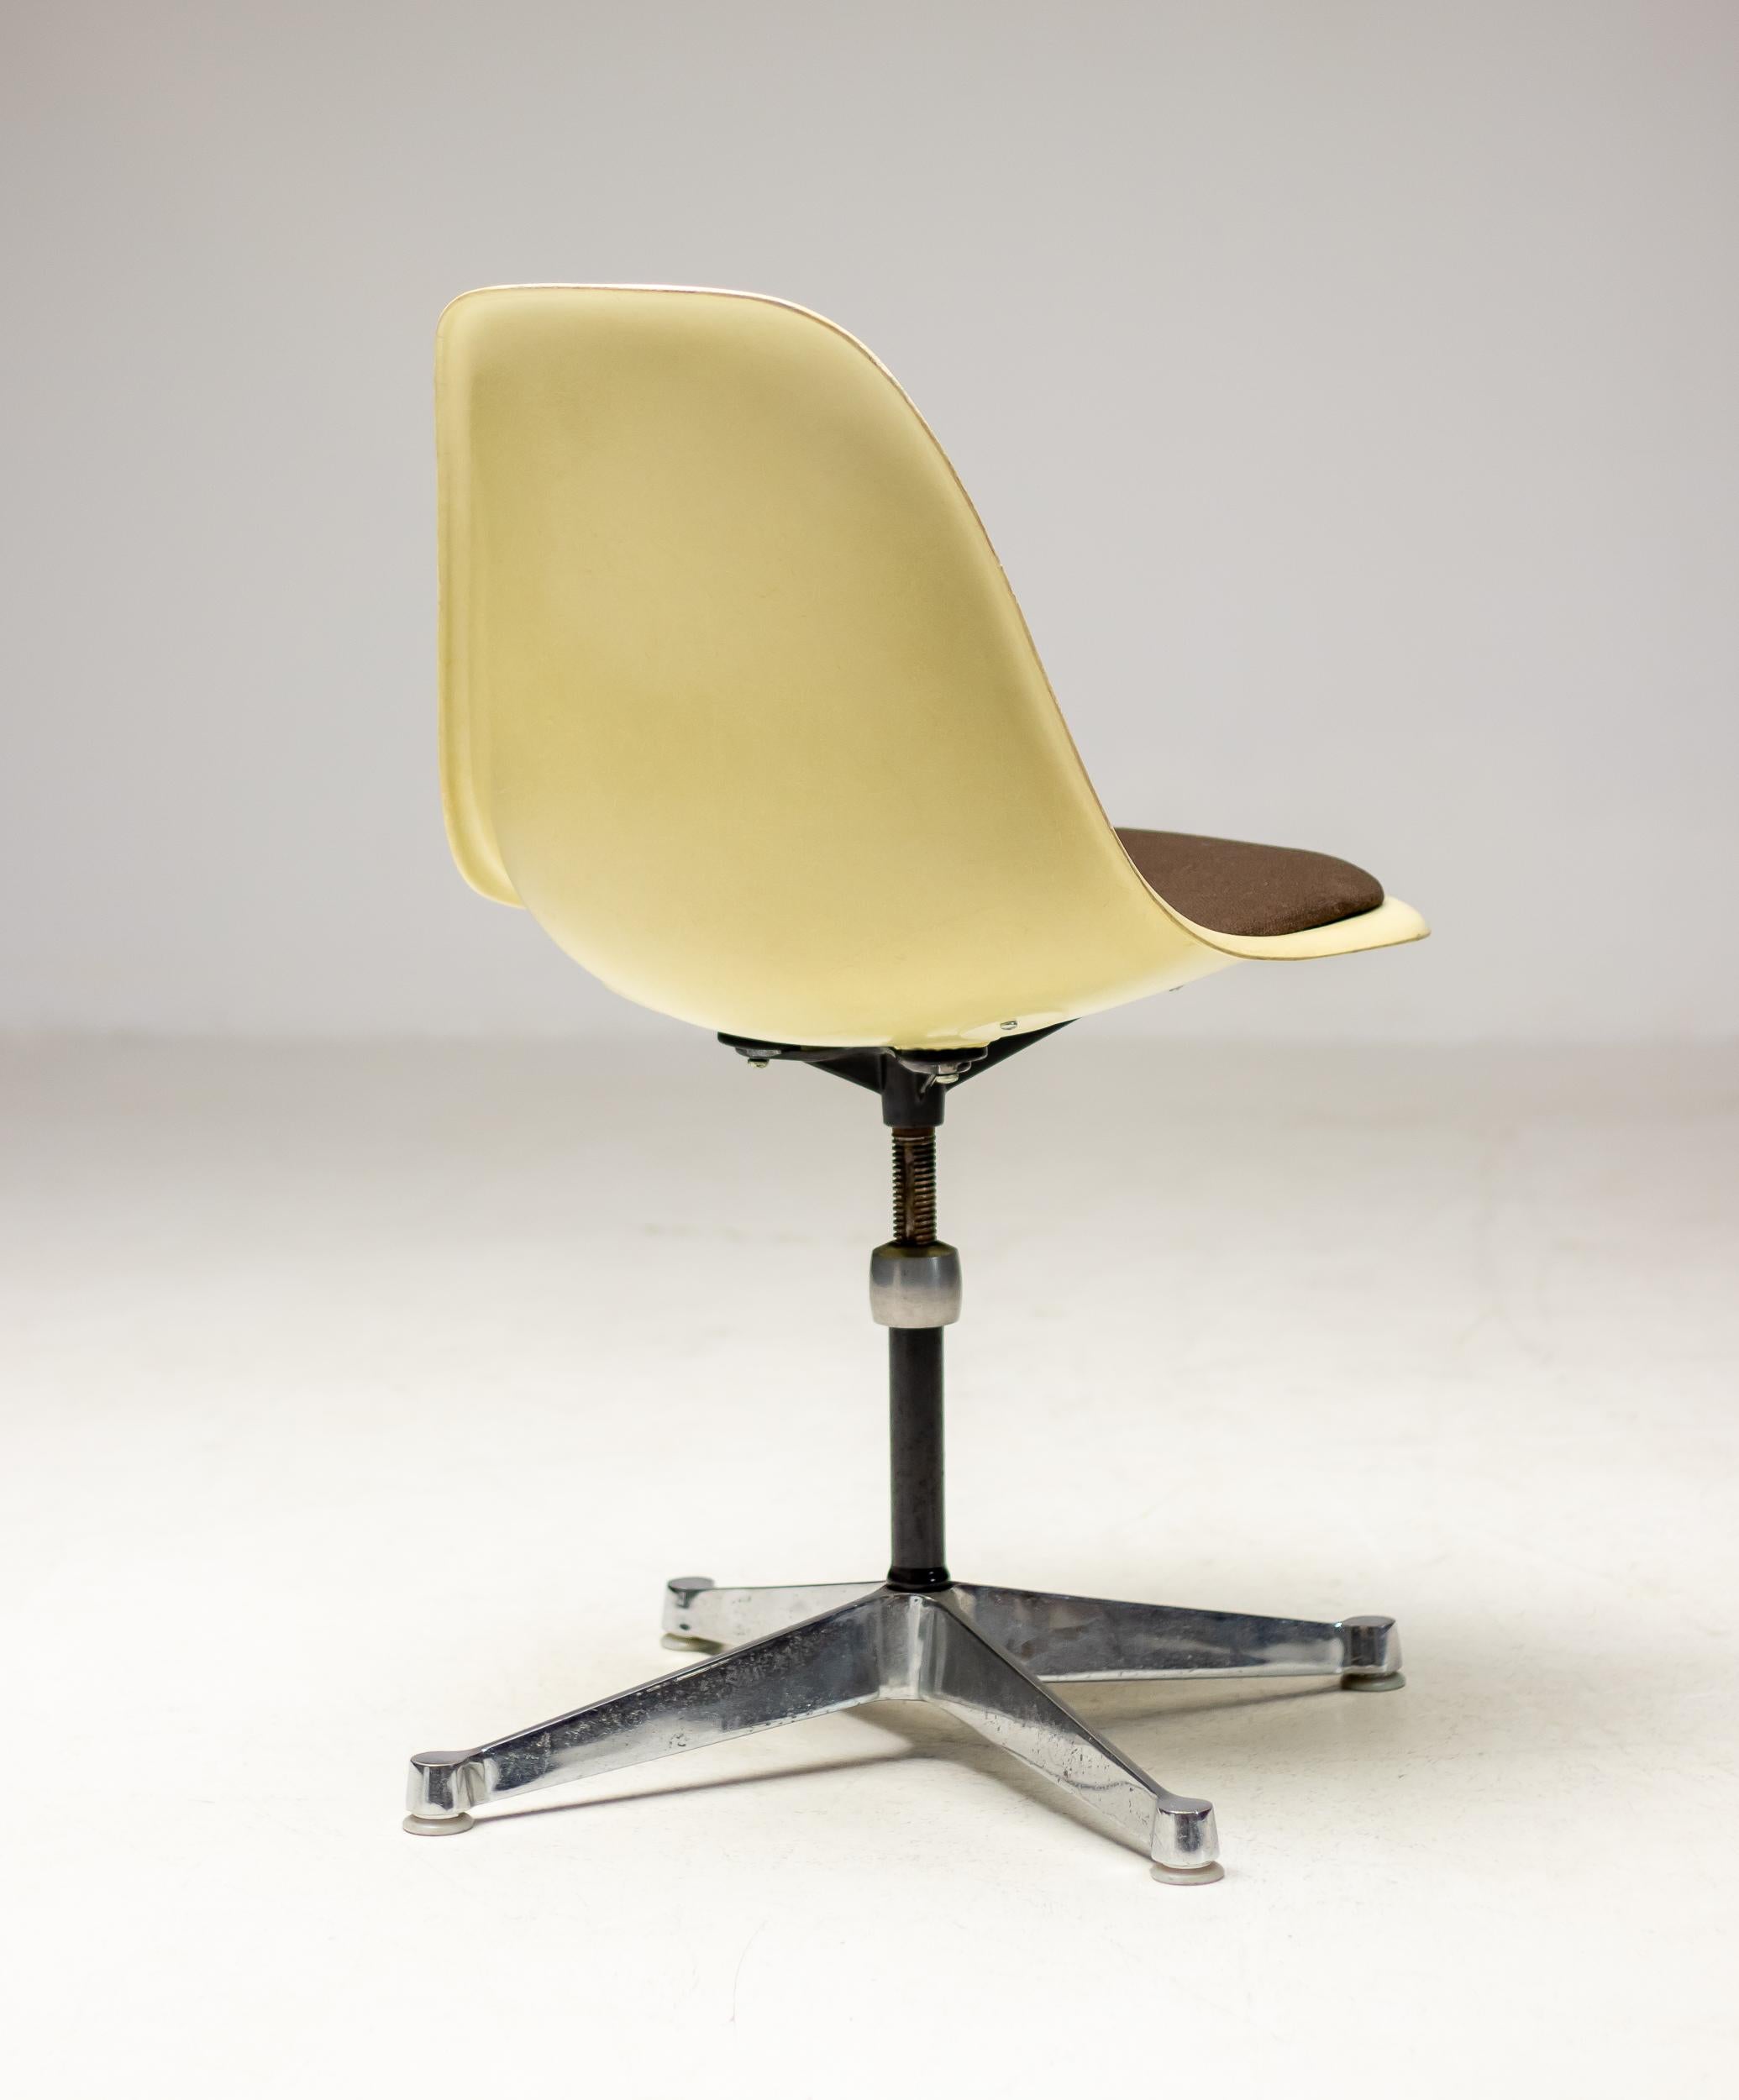 Drehbarer Beistellstuhl aus pergamentfarbenem Fiberglas, entworfen von Charles und Ray Eames für Herman Miller.
Begehrenswerte Originalversion aus den 1960er Jahren mit einem Sitzpad aus braunem Stoff, das auf Wunsch leicht neu gepolstert werden